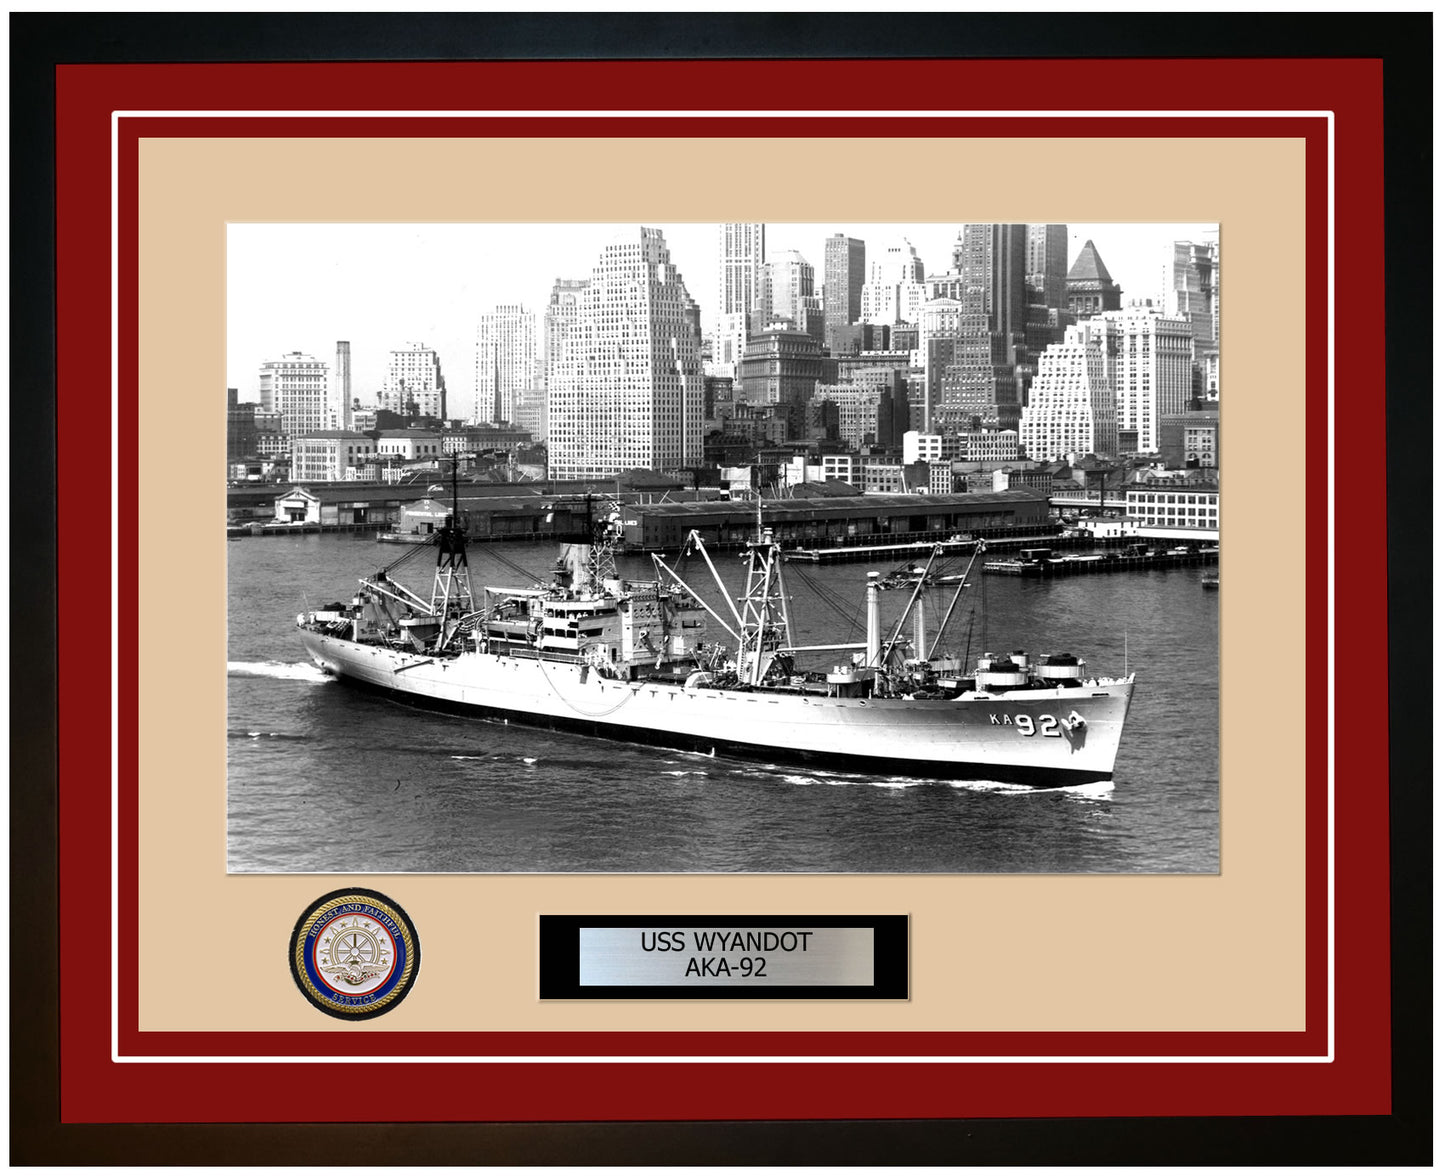 USS Wyandot AKA-92 Framed Navy Ship Photo Burgundy